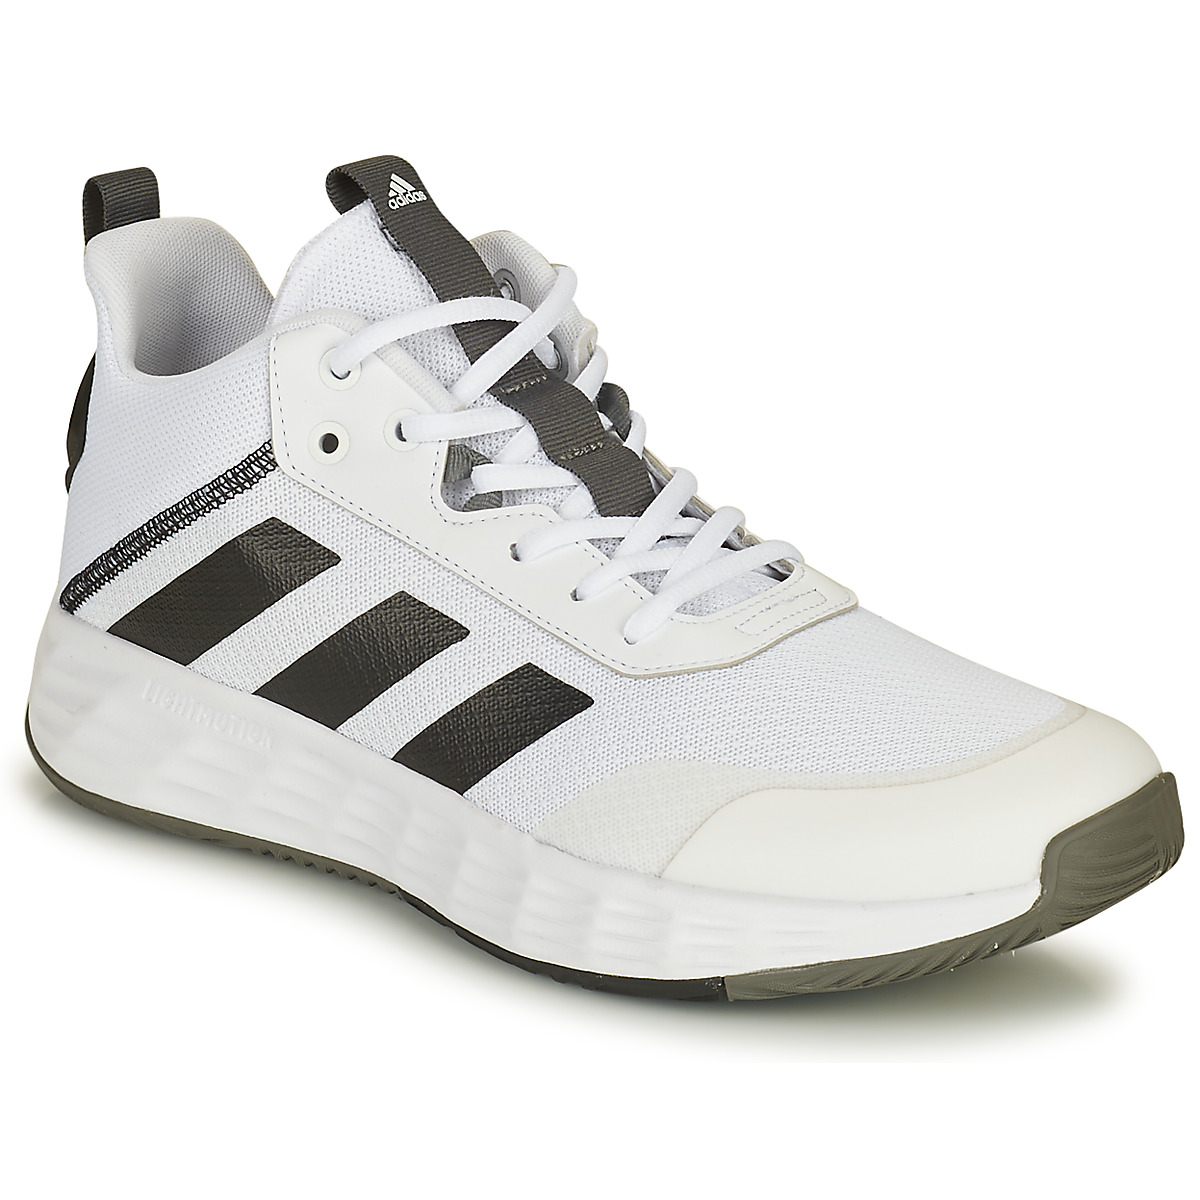 Παπούτσια του Μπάσκετ adidas OWNTHEGAME 2.0 Συνθετικό